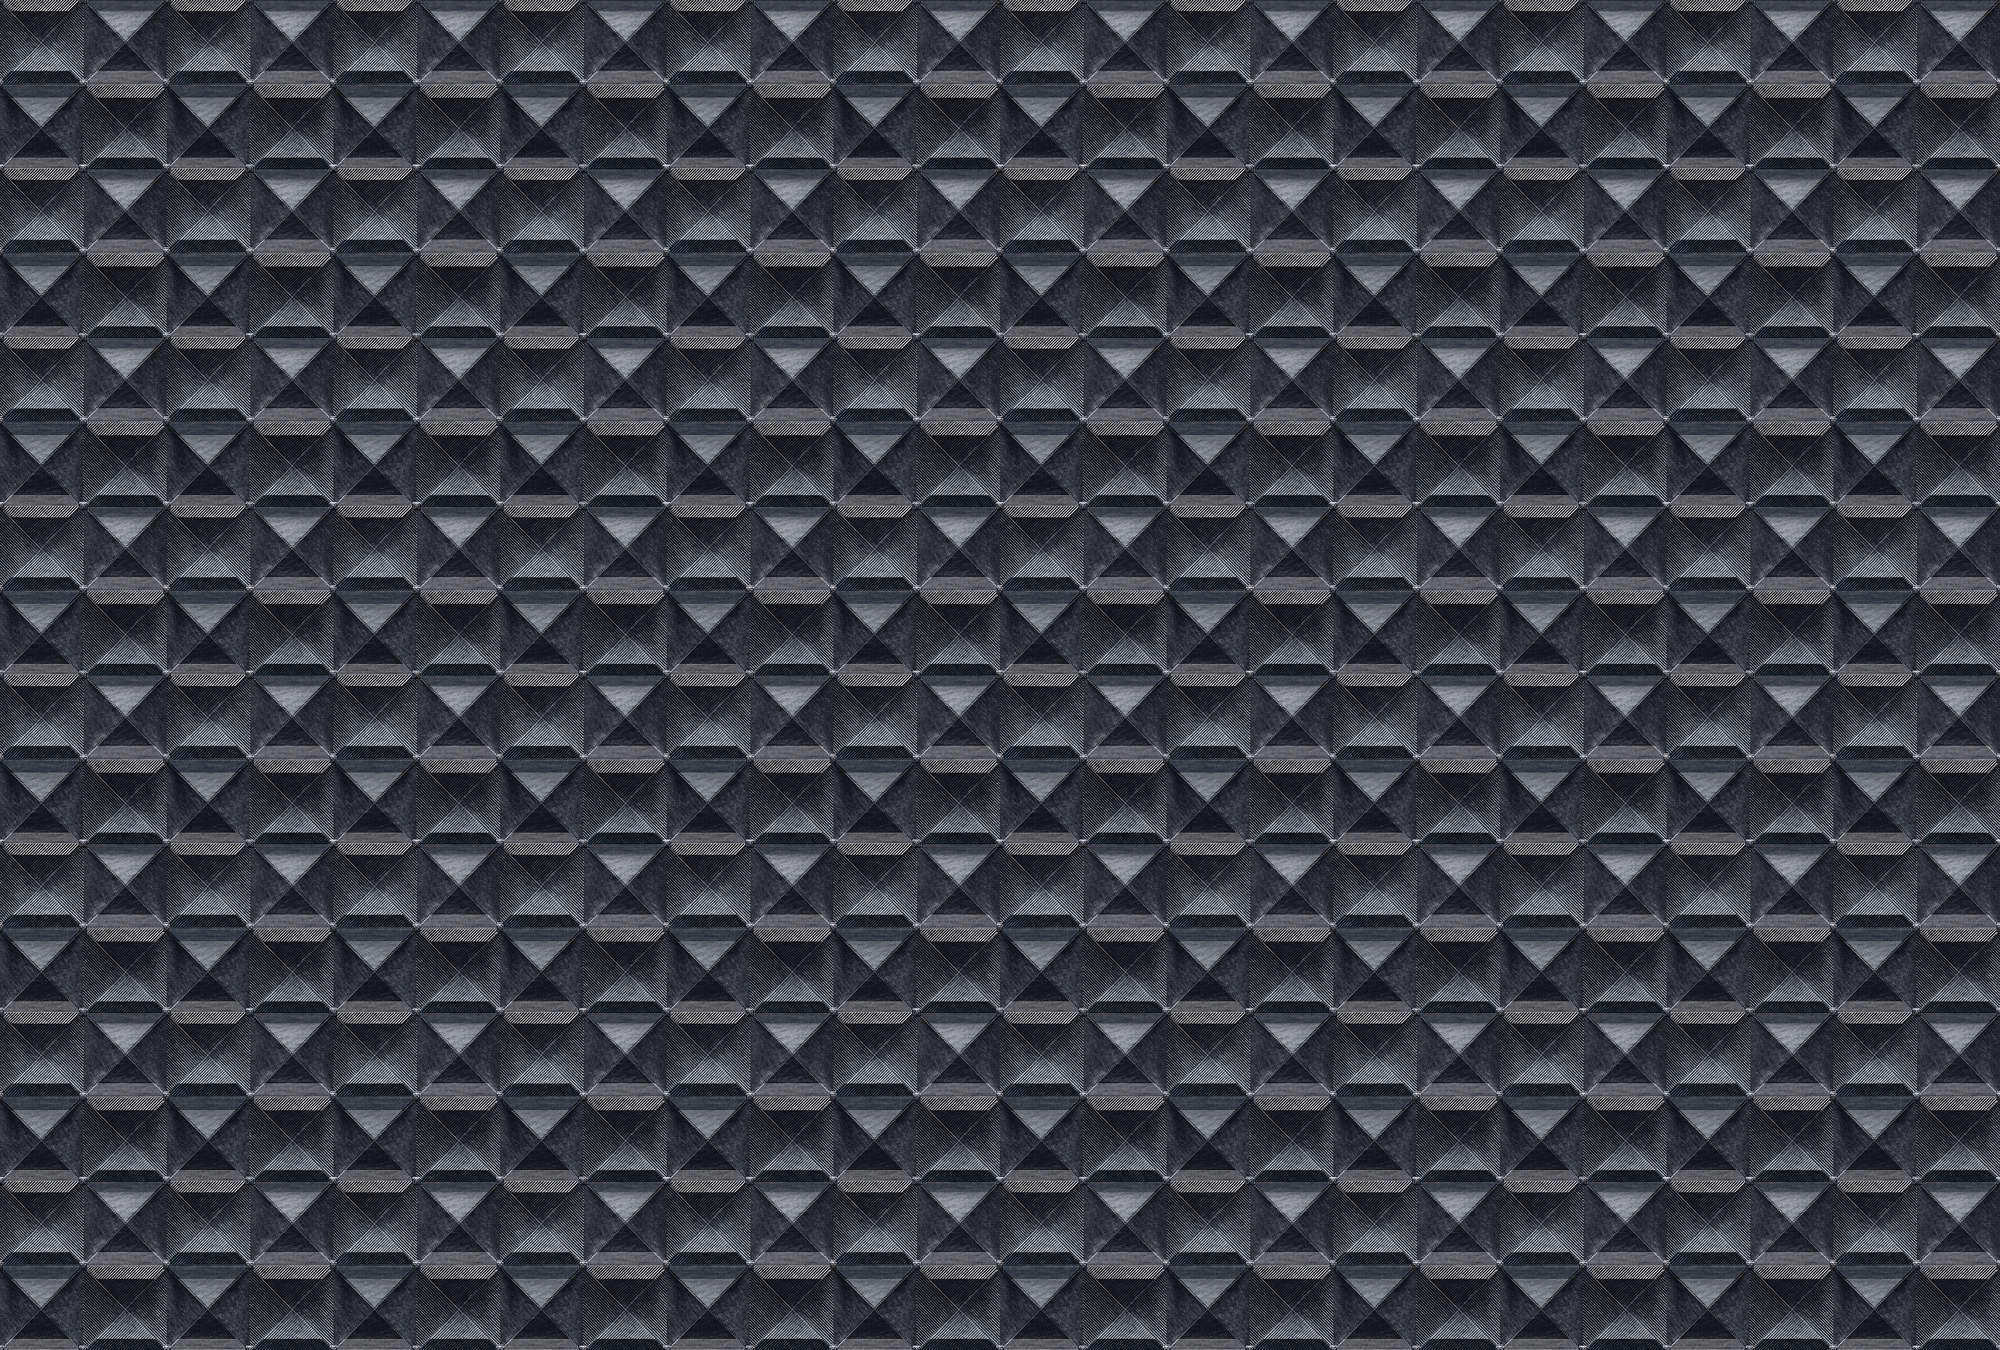             The edge 2 - 3D behang met ruitjesmotief - Blauw, Zwart | Premium glad vliesdoek
        